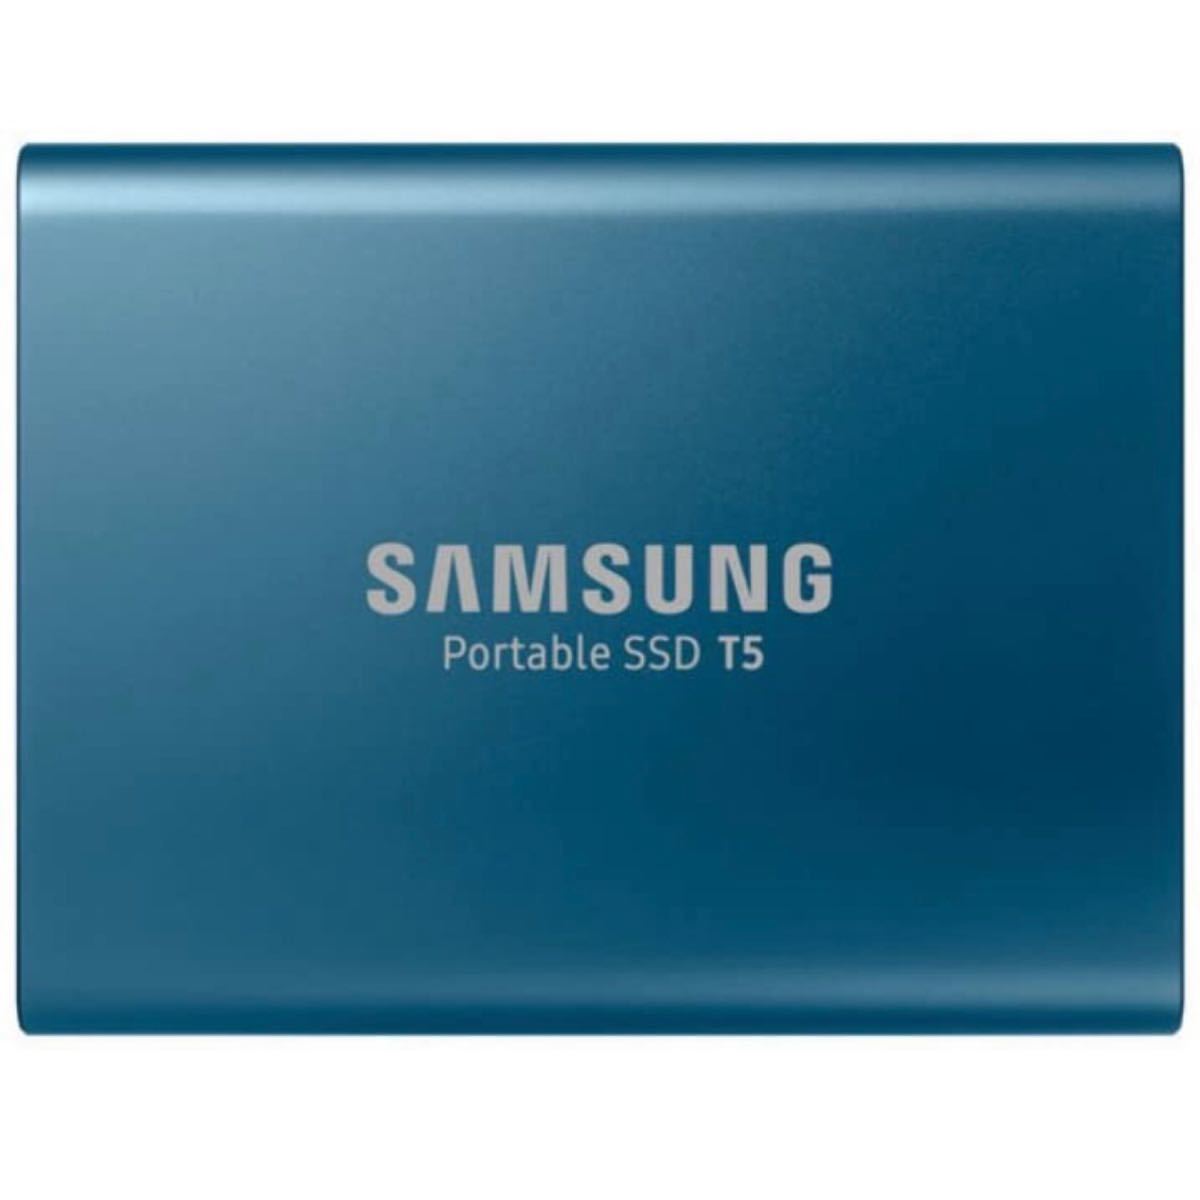 【新品】国内正規品 MU-PA500B/IT サムスン USB3.1 ポータブルSSD 500GB Portable SSD T5